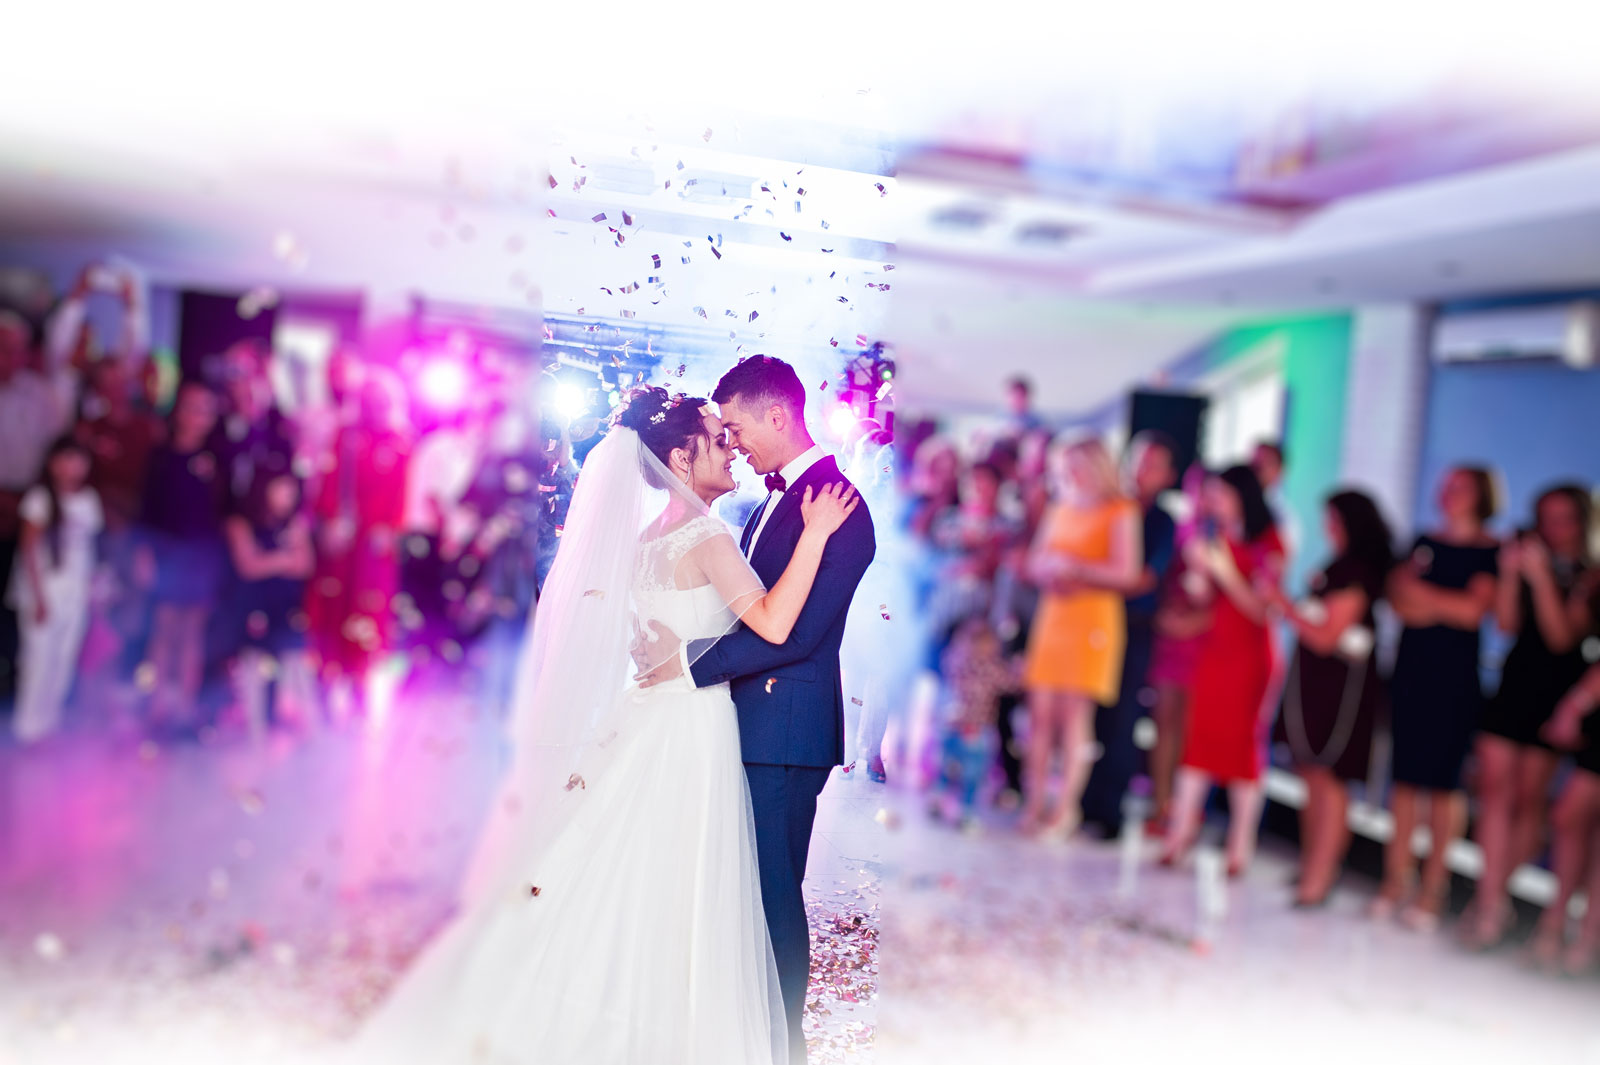 Brautpaar auf der Tanzfläche, die Gäste stehen im Kreis drumherum